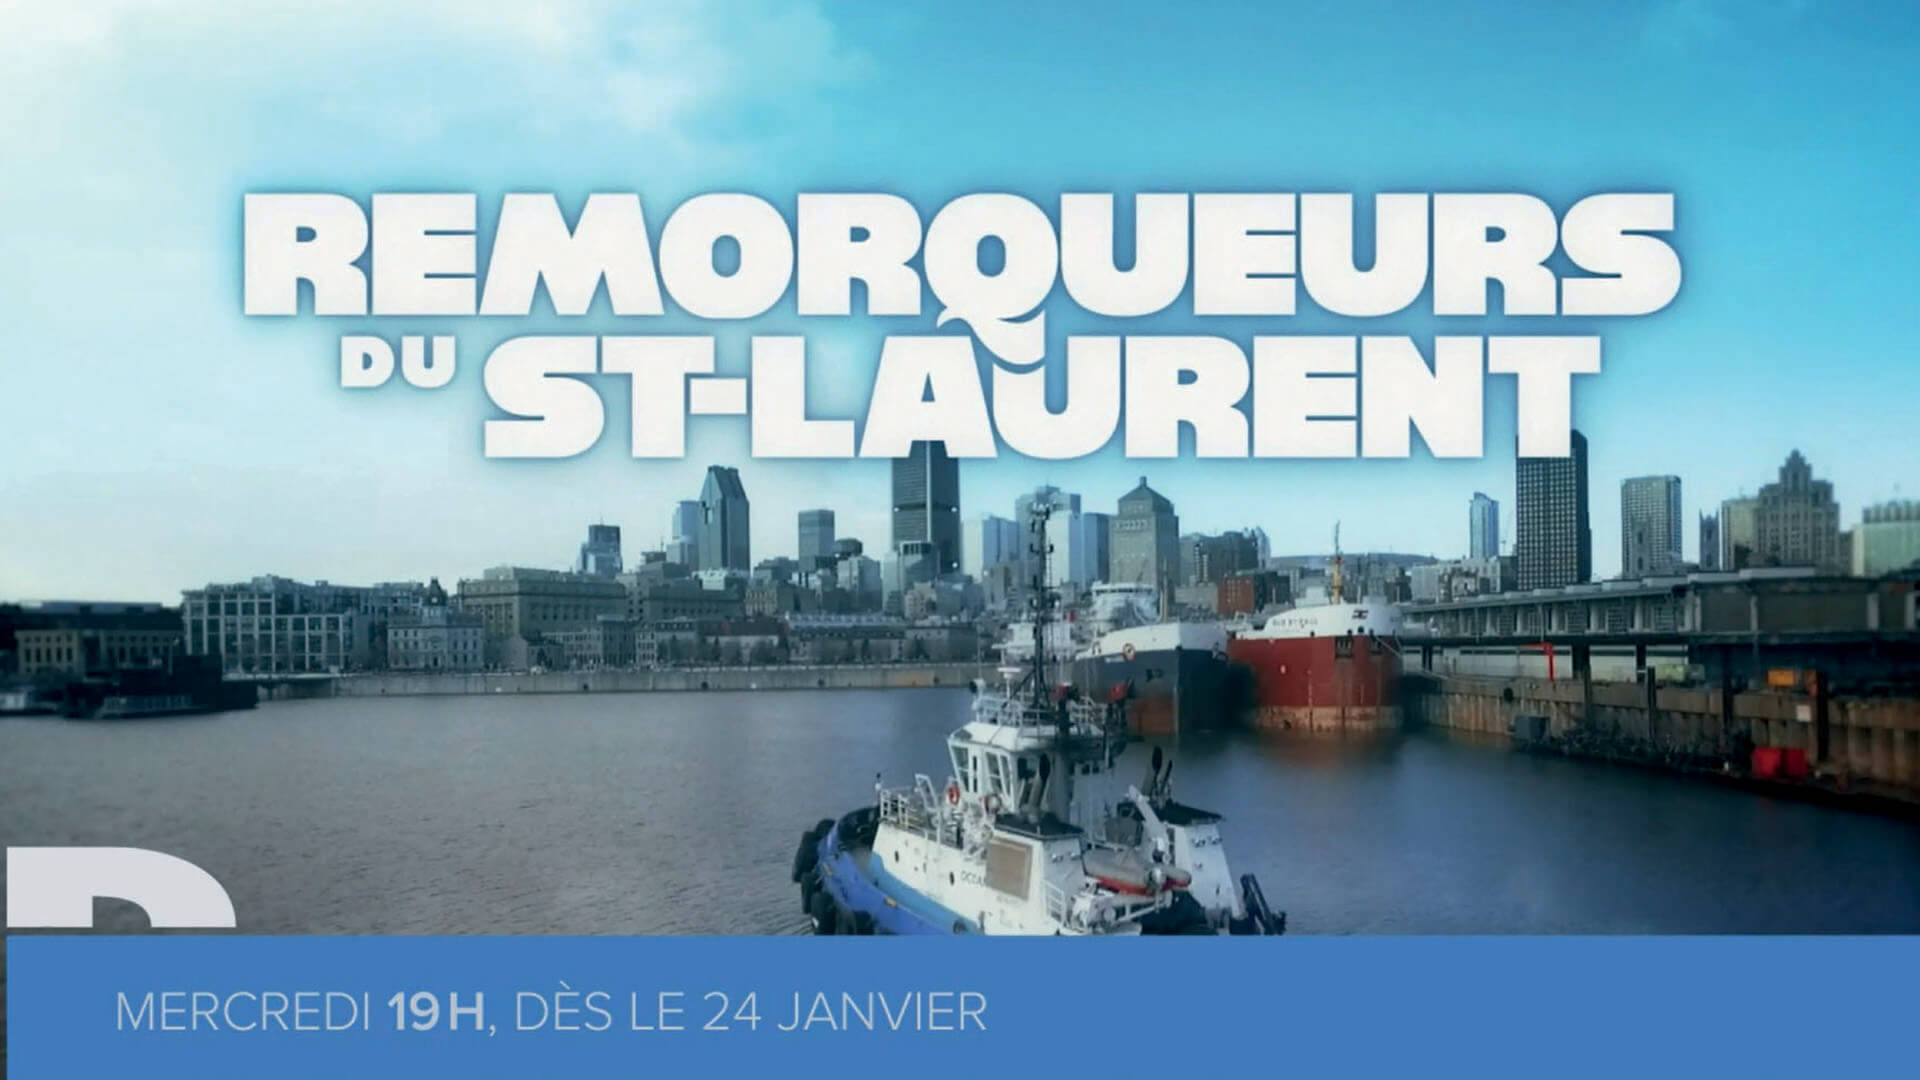 Remorqueurs du St-Laurent series